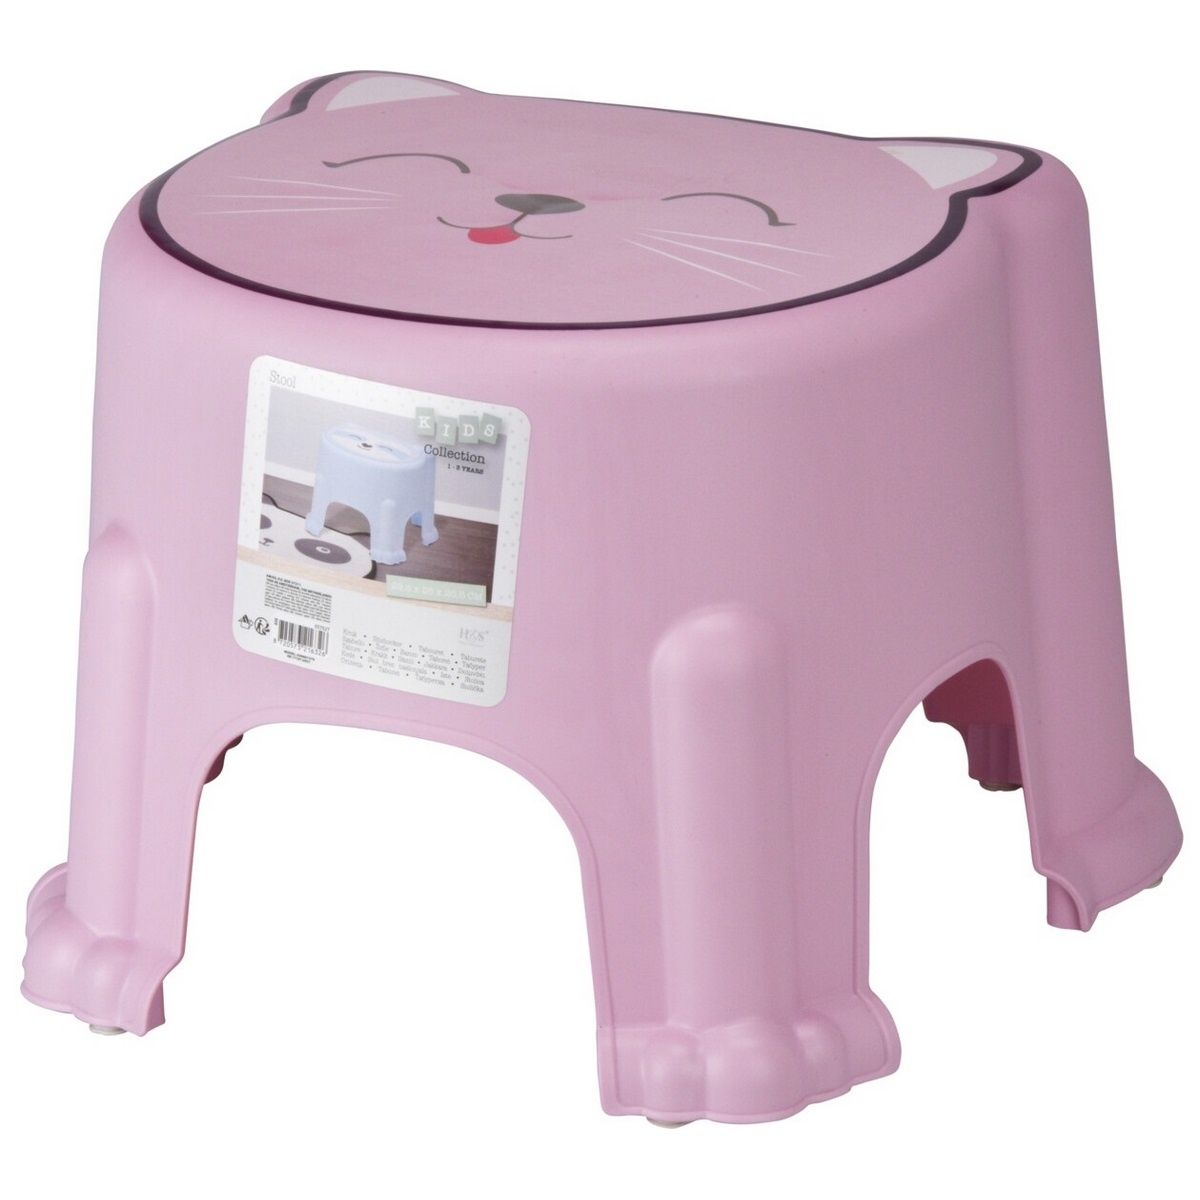 Hatu Dětská plastová stolička Kočka růžová